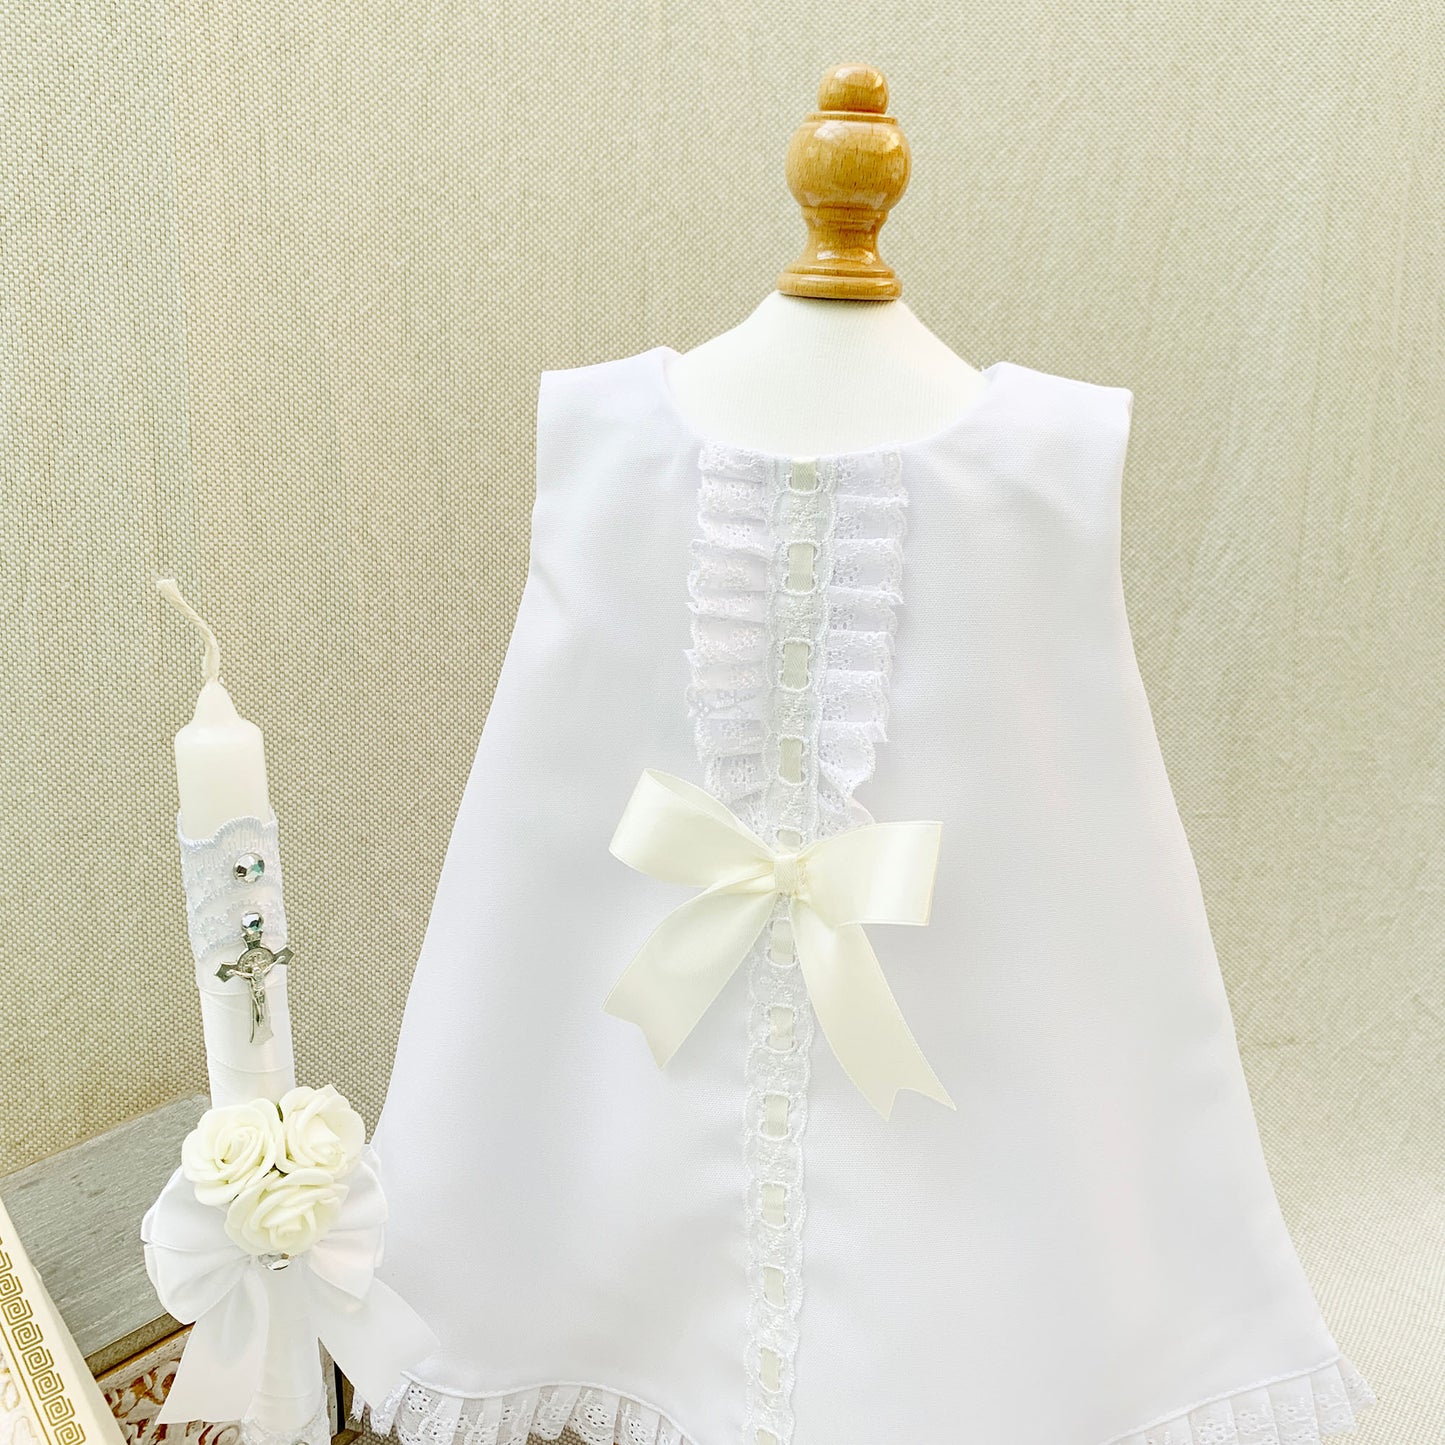 Conjunto bautismal vestido corte en A ivory cinta + accesorios (6 piezas)